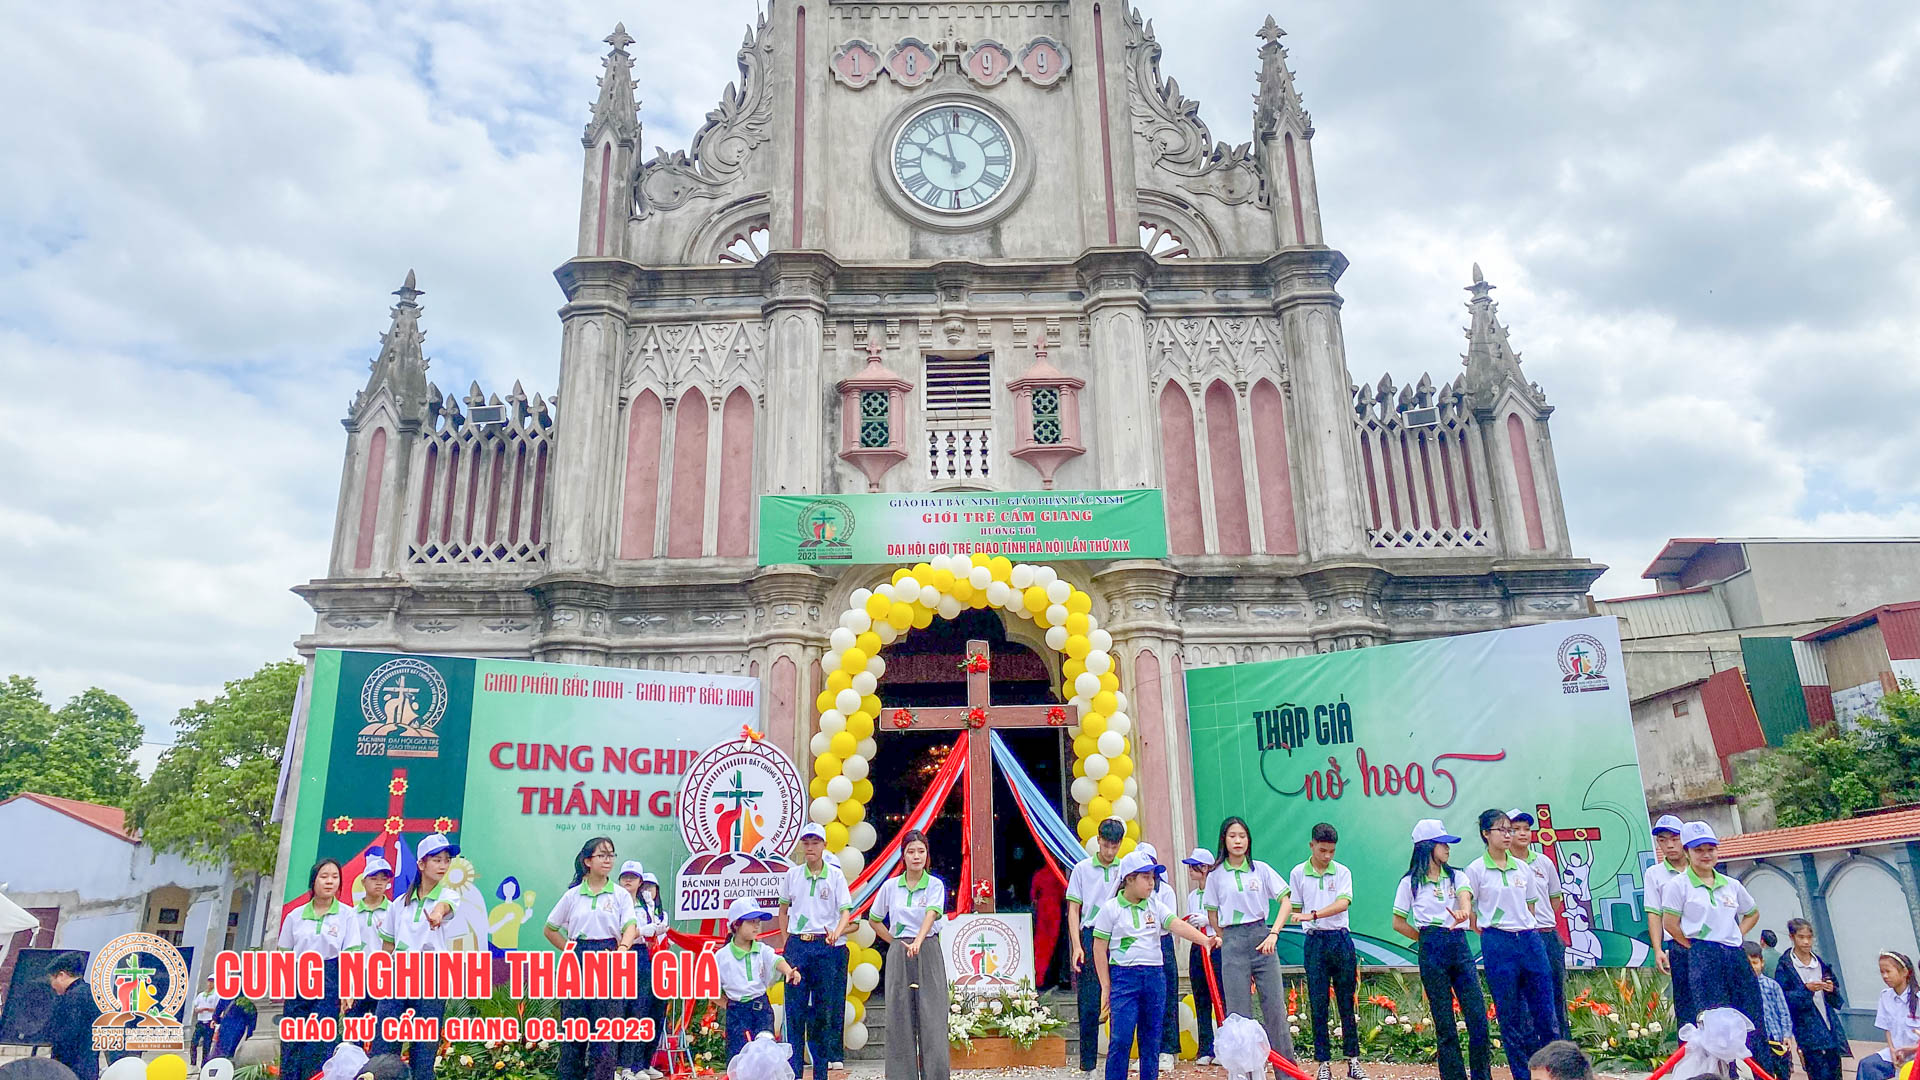 GP.Bắc Ninh - Xứ Cẩm Giang: Cung nghinh Thánh Giá giới trẻ giáo tỉnh